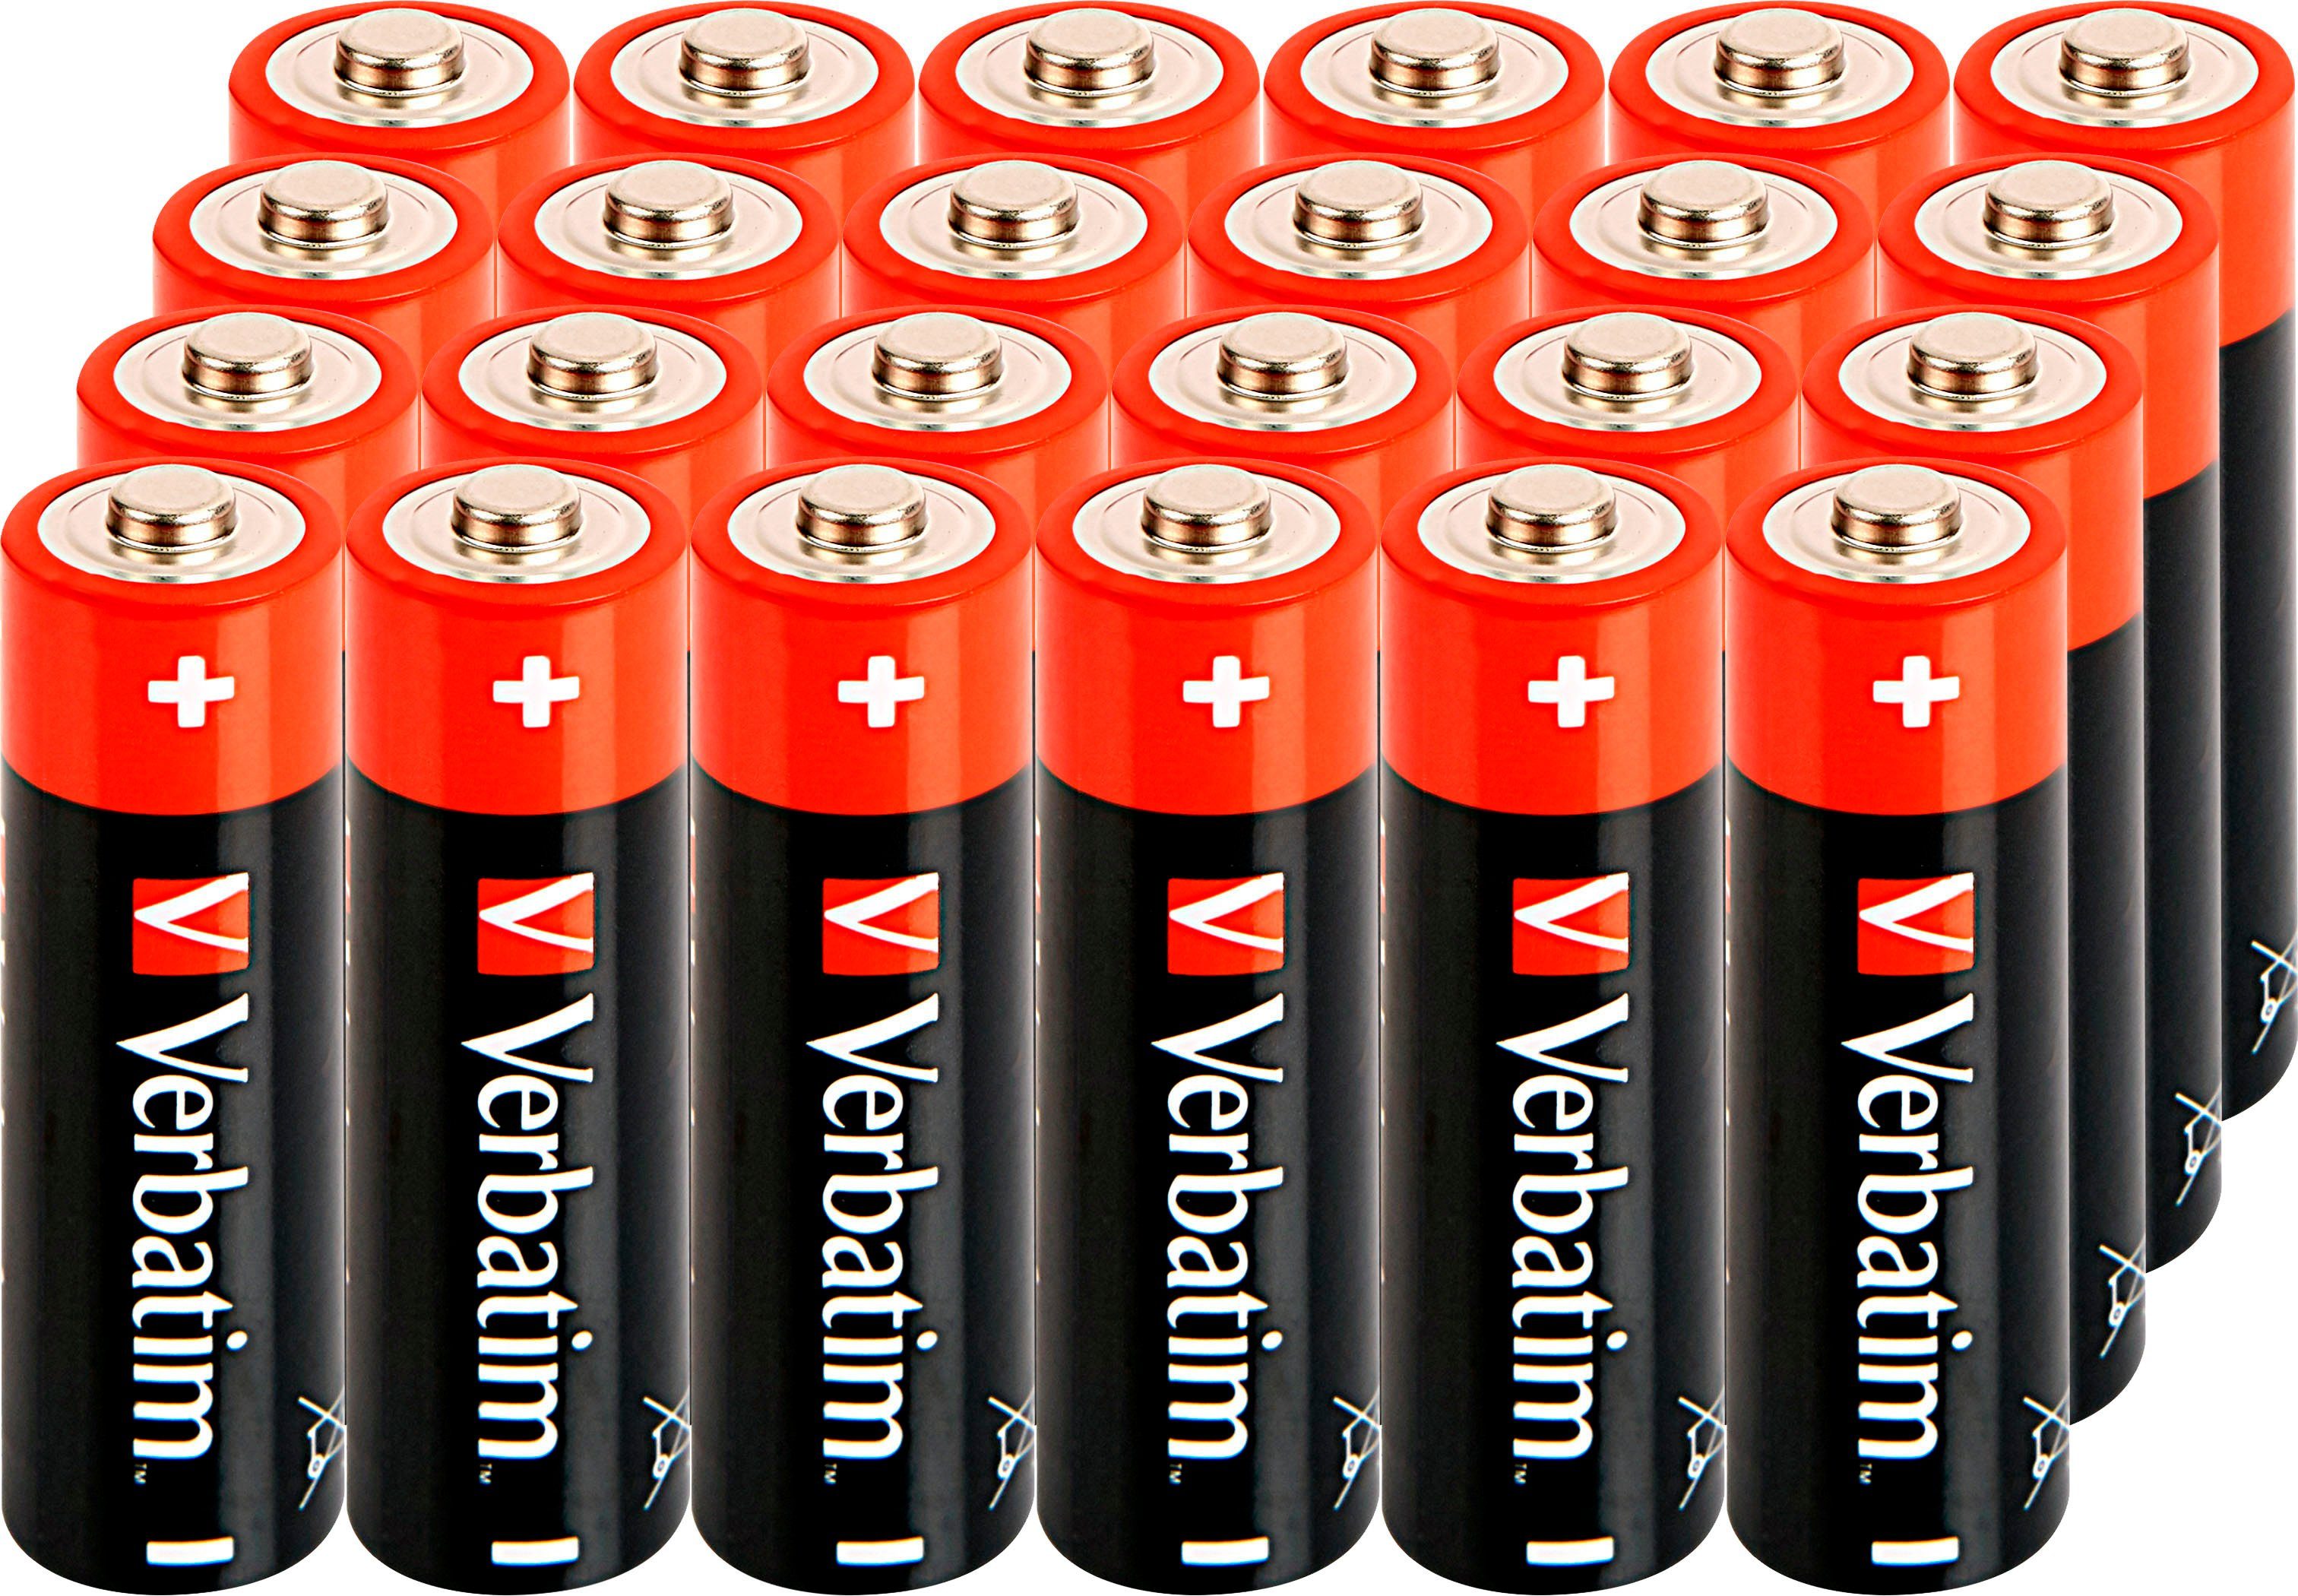 Verbatim »Batterie Alkaline, Mignon, AA, LR06, 1.5V, Retail Box, (24-Pack)«  Batterie online kaufen | OTTO